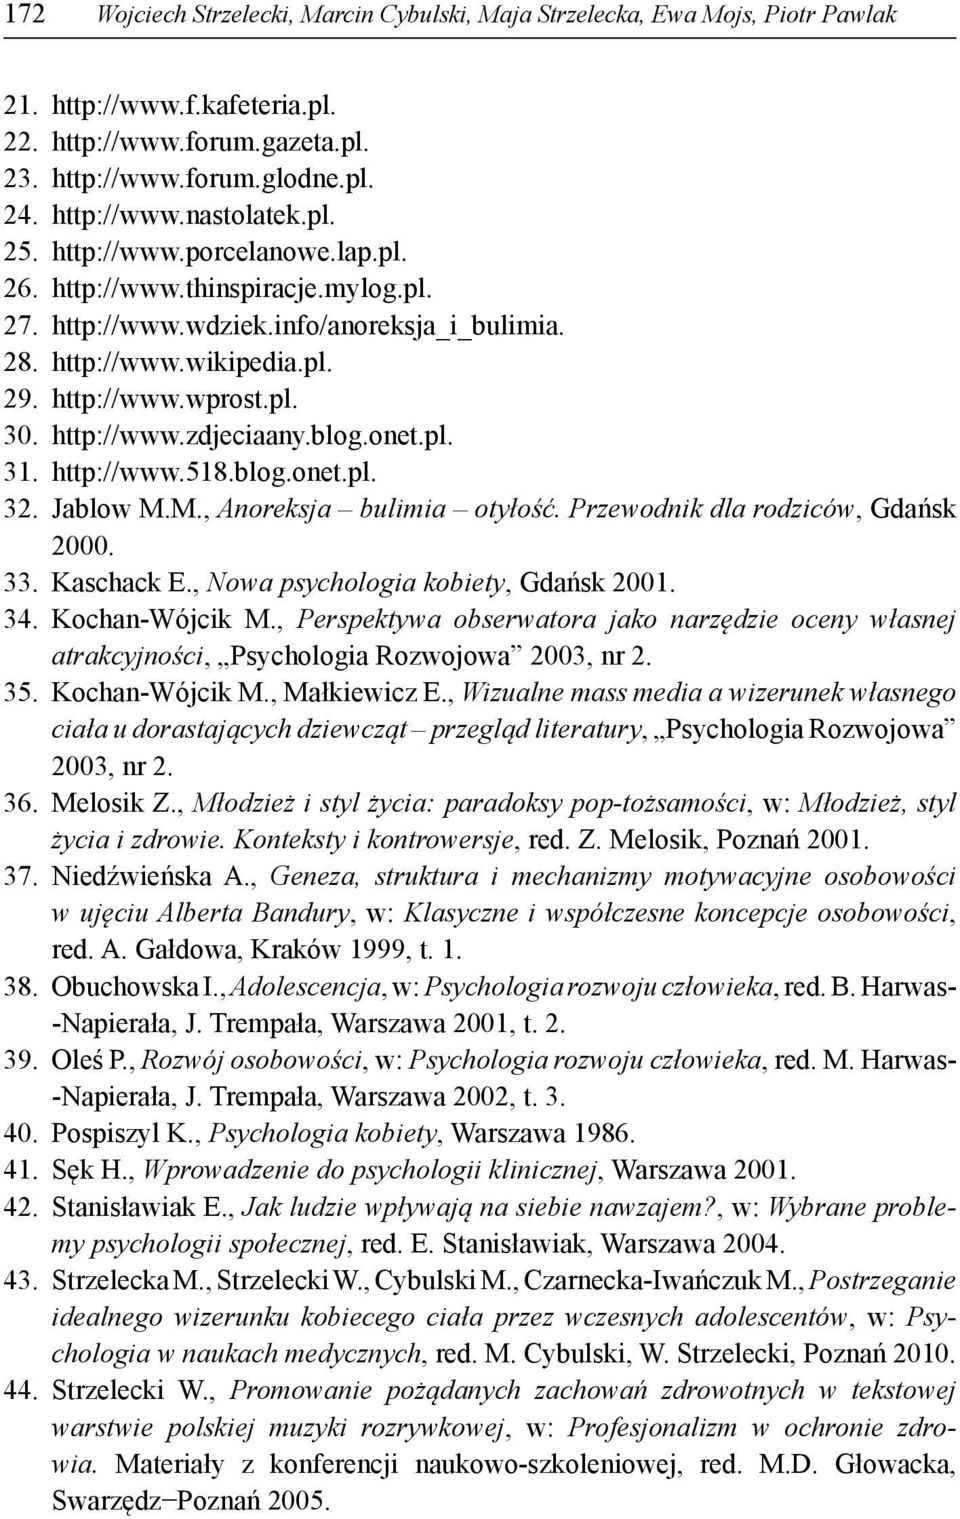 blog.onet.pl. 31. http://www.518.blog.onet.pl. 32. Jablow M.M., Anoreksja bulimia otyłość. Przewodnik dla rodziców, Gdańsk 2000. 33. Kaschack E., Nowa psychologia kobiety, Gdańsk 2001. 34.